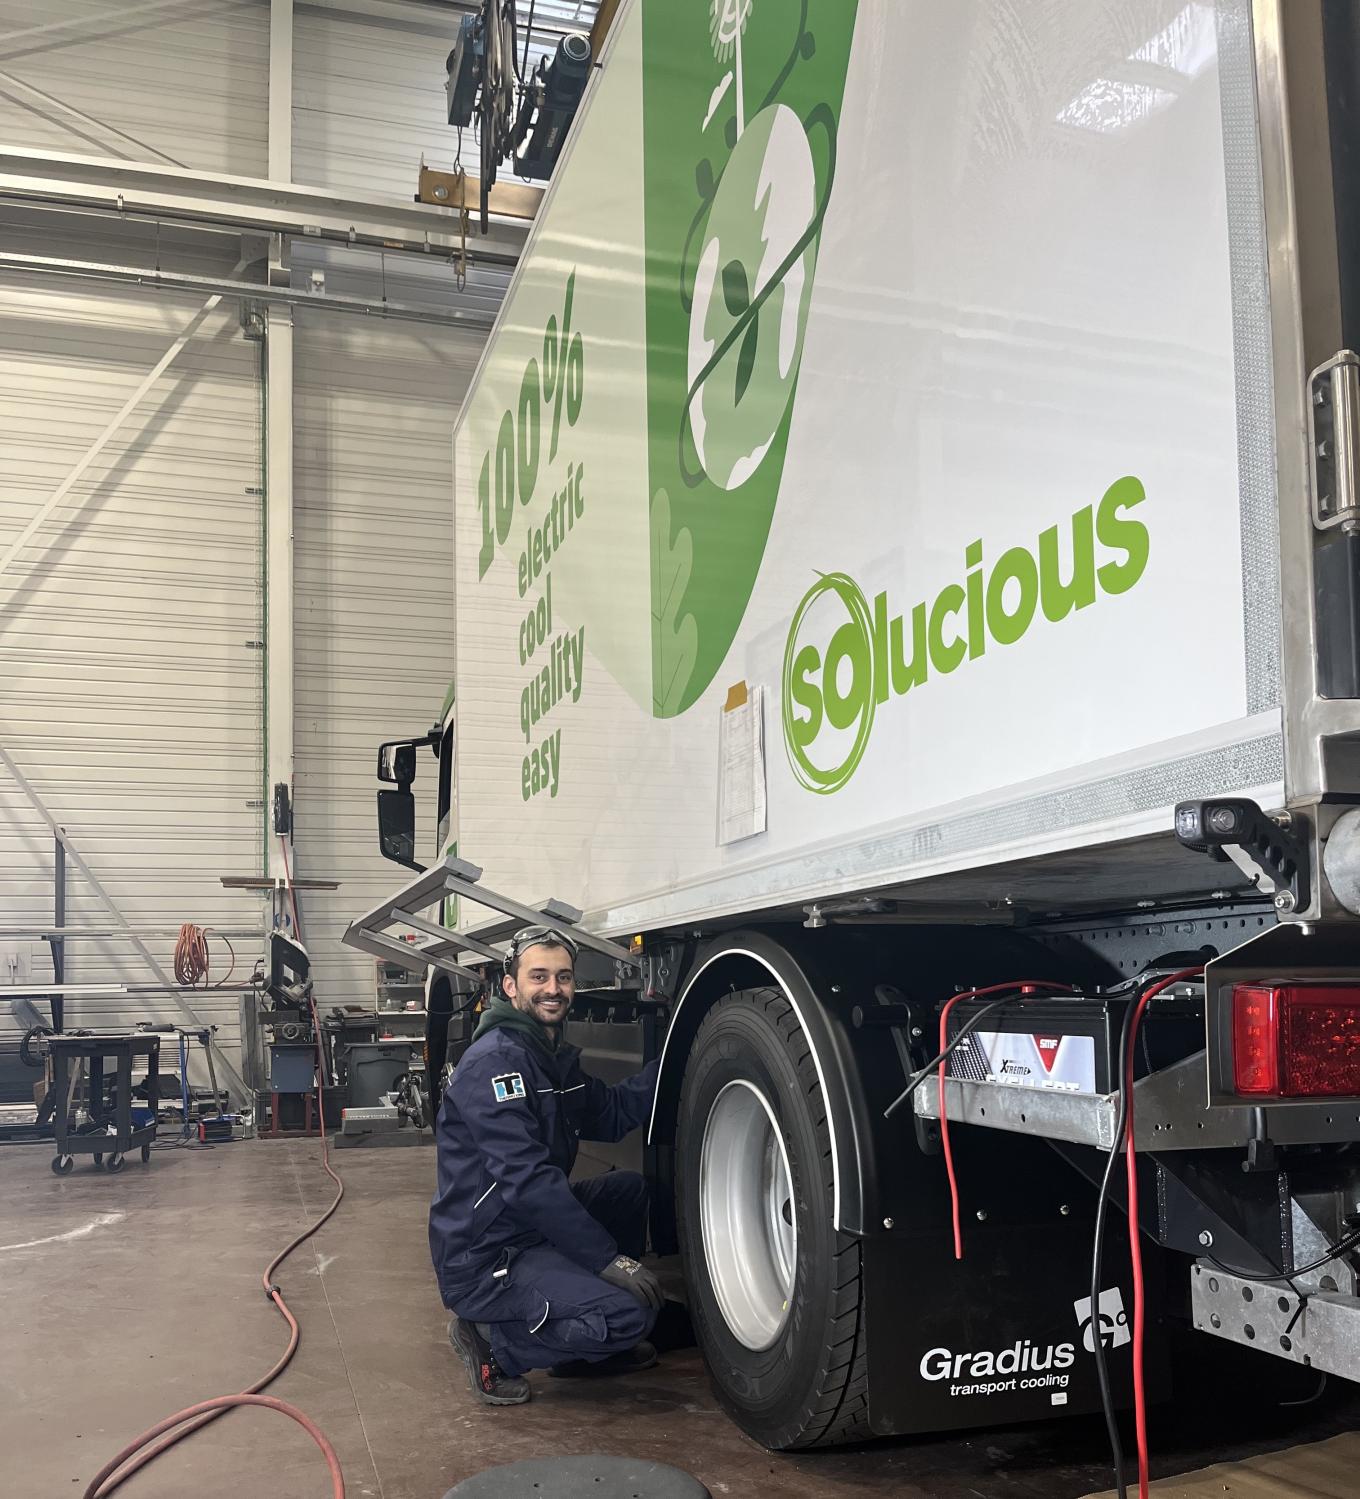 Equans-Gradius-rust-nieuwe-elektrische-vrachtwagens-Solucious-uit-koeltransport-al-10-jaar-partners